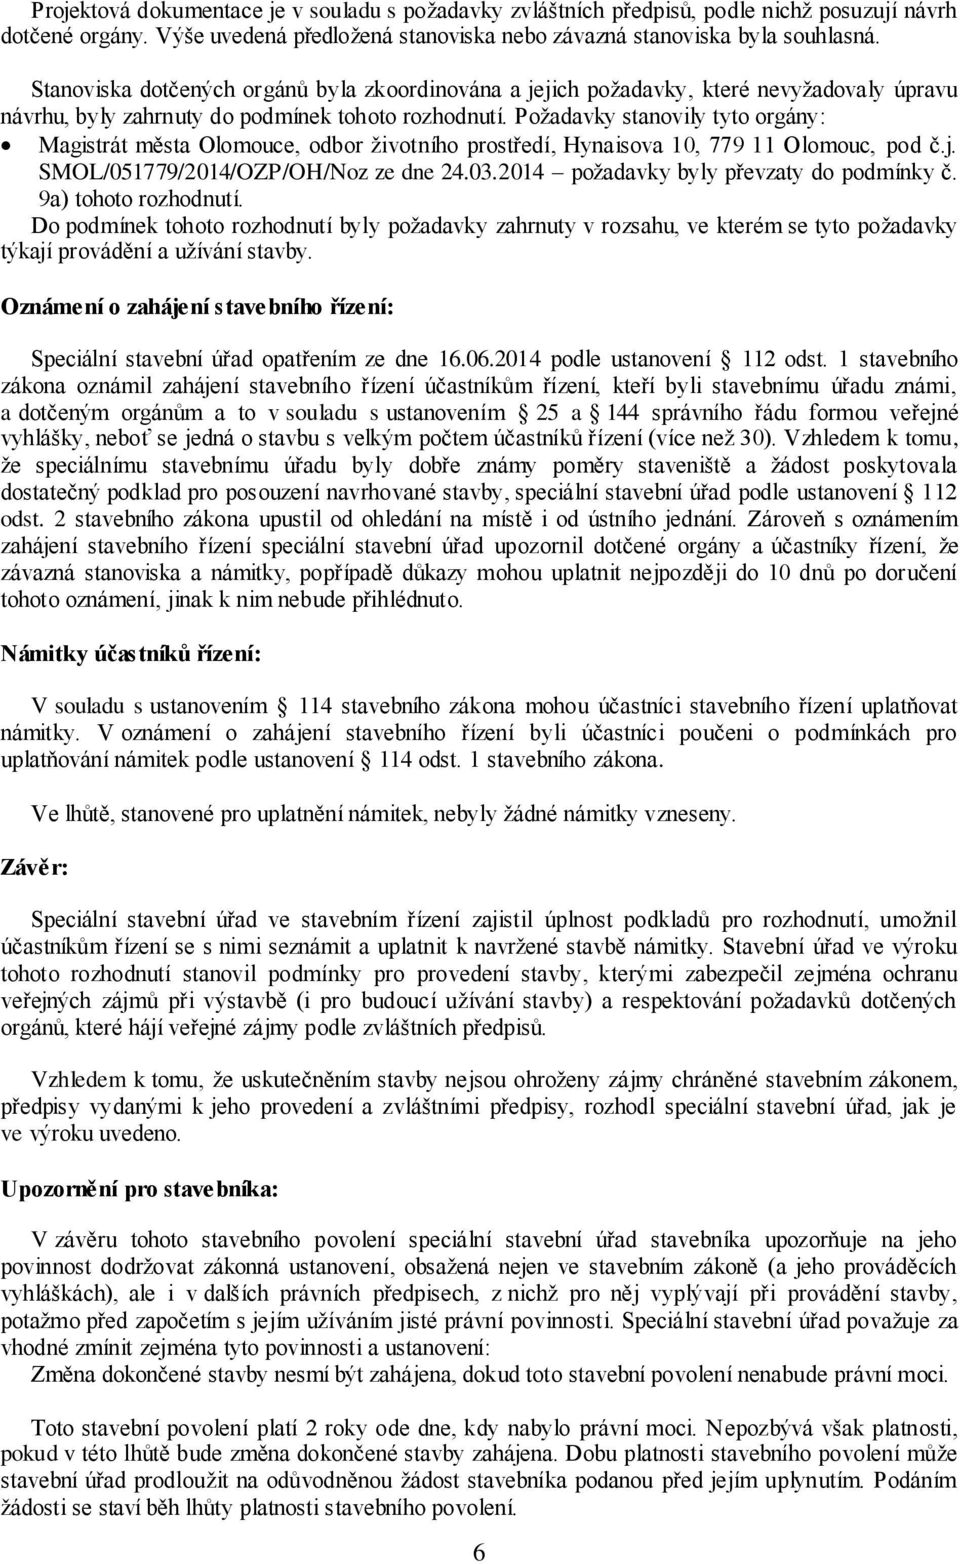 Požadavky stanovily tyto orgány: Magistrát města Olomouce, odbor životního prostředí, Hynaisova 10, 779 11 Olomouc, pod č.j. SMOL/051779/2014/OZP/OH/Noz ze dne 24.03.